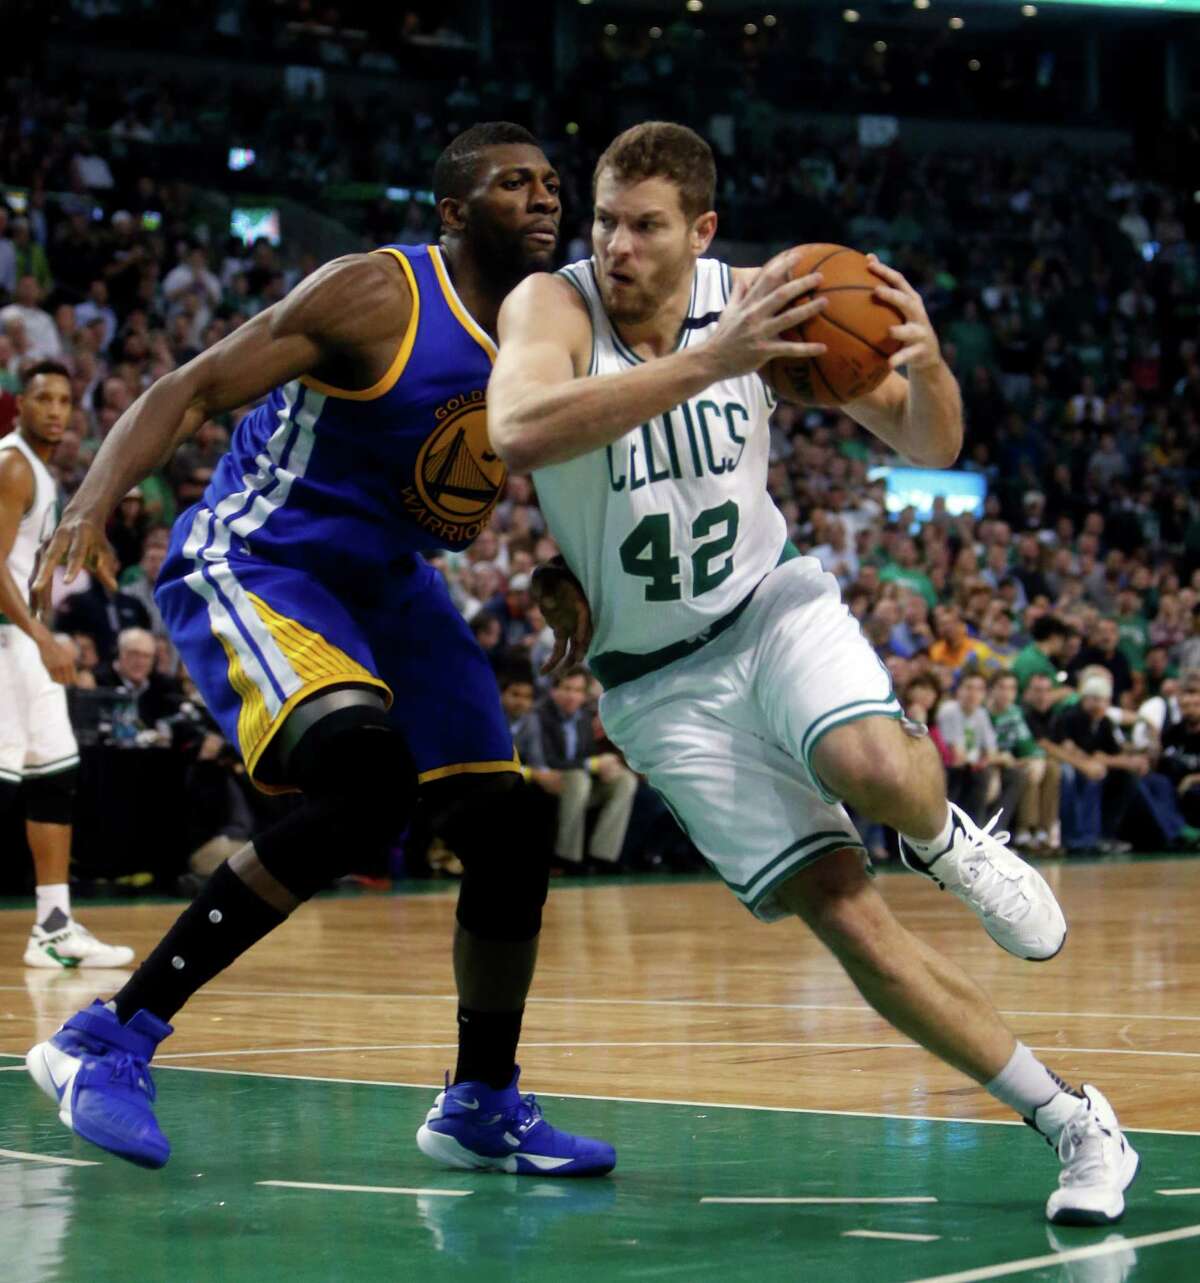 Boston Celtics' David Lee drives against Golden State Warriors' Festus Ezeli in 4th quarter during Warriors 124-119 double overtime win in NBA game at TD Garden in Boston, Massachusetts on Friday, December 11, 2015.